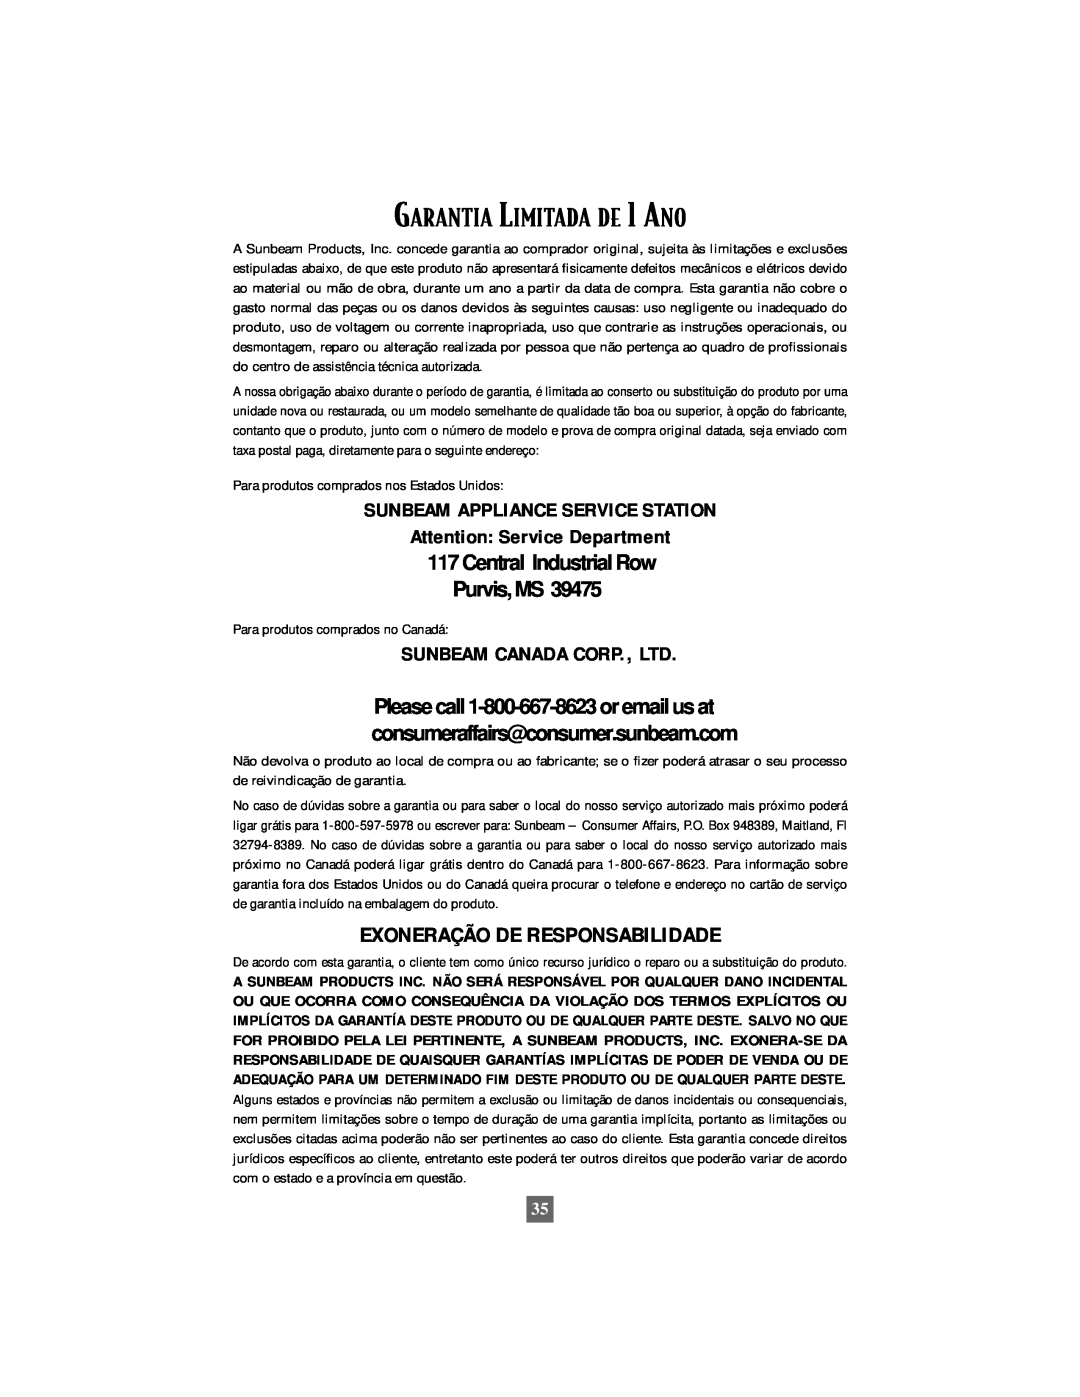 Oster 6210 manual GARANTIA LIMITADA DE 1 ANO, Exoneração De Responsabilidade, Sunbeam Appliance Service Station 